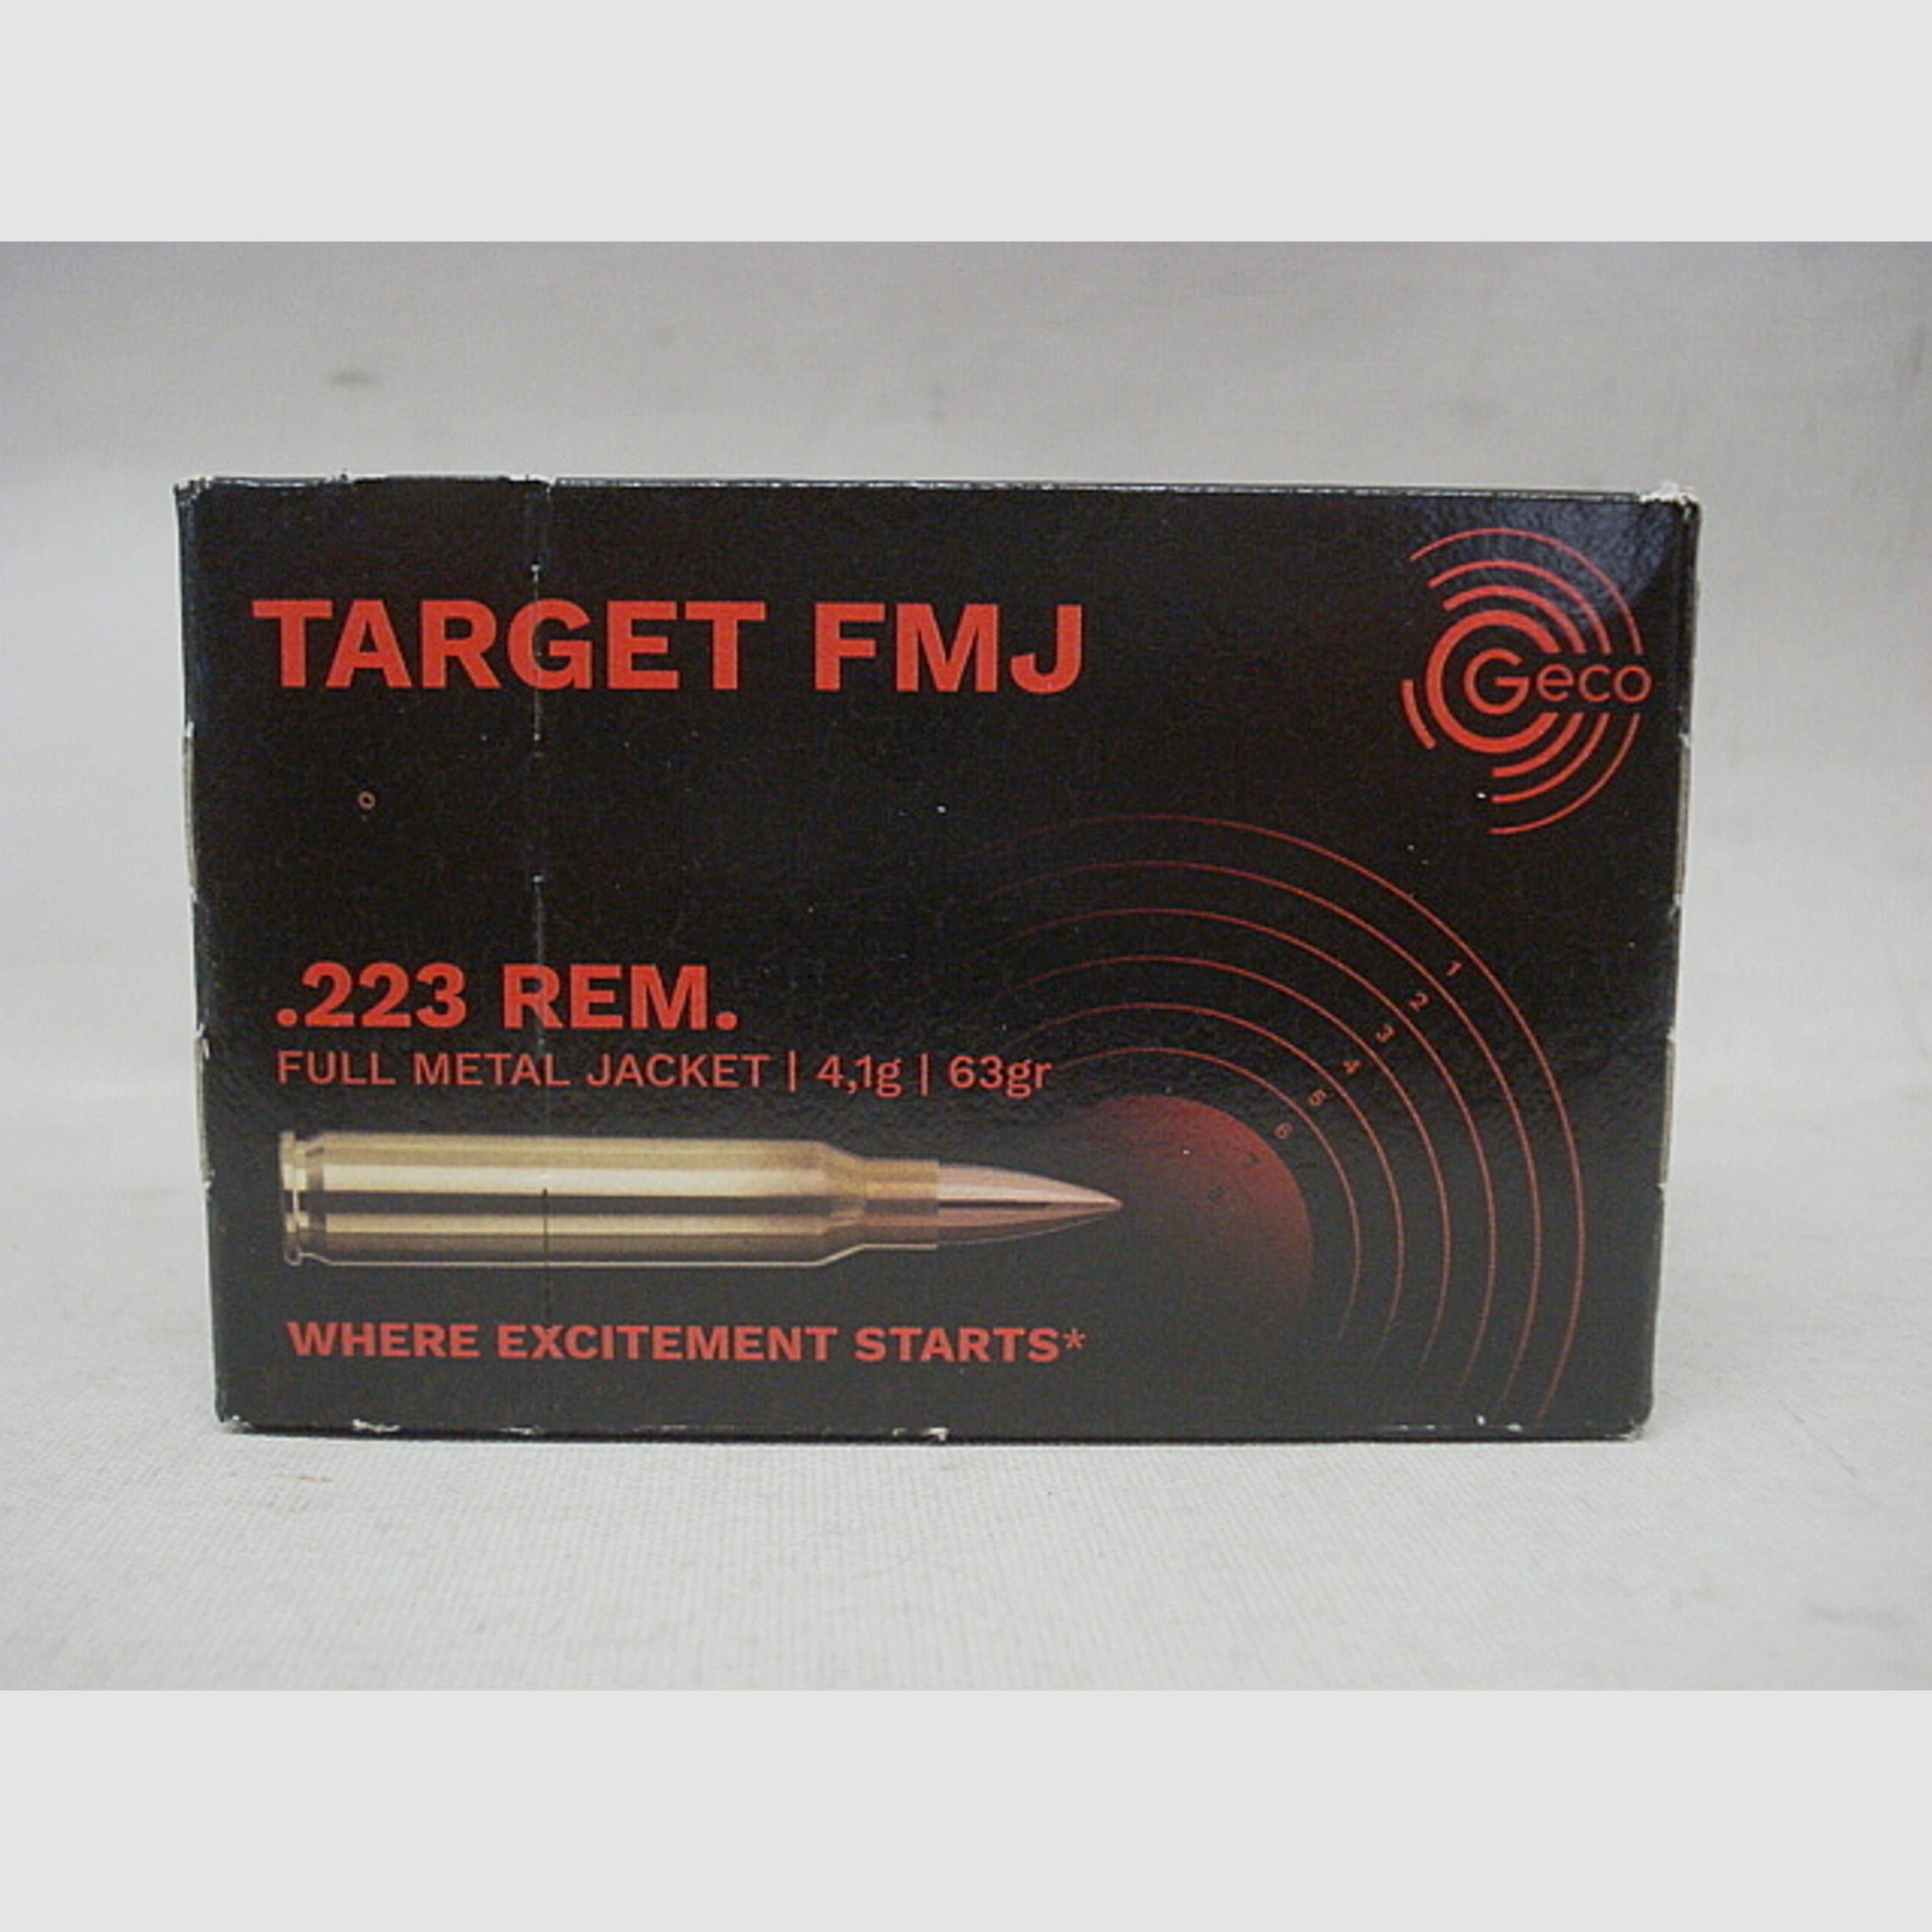 .223Rem VM - 4,1g/63gr (a50)